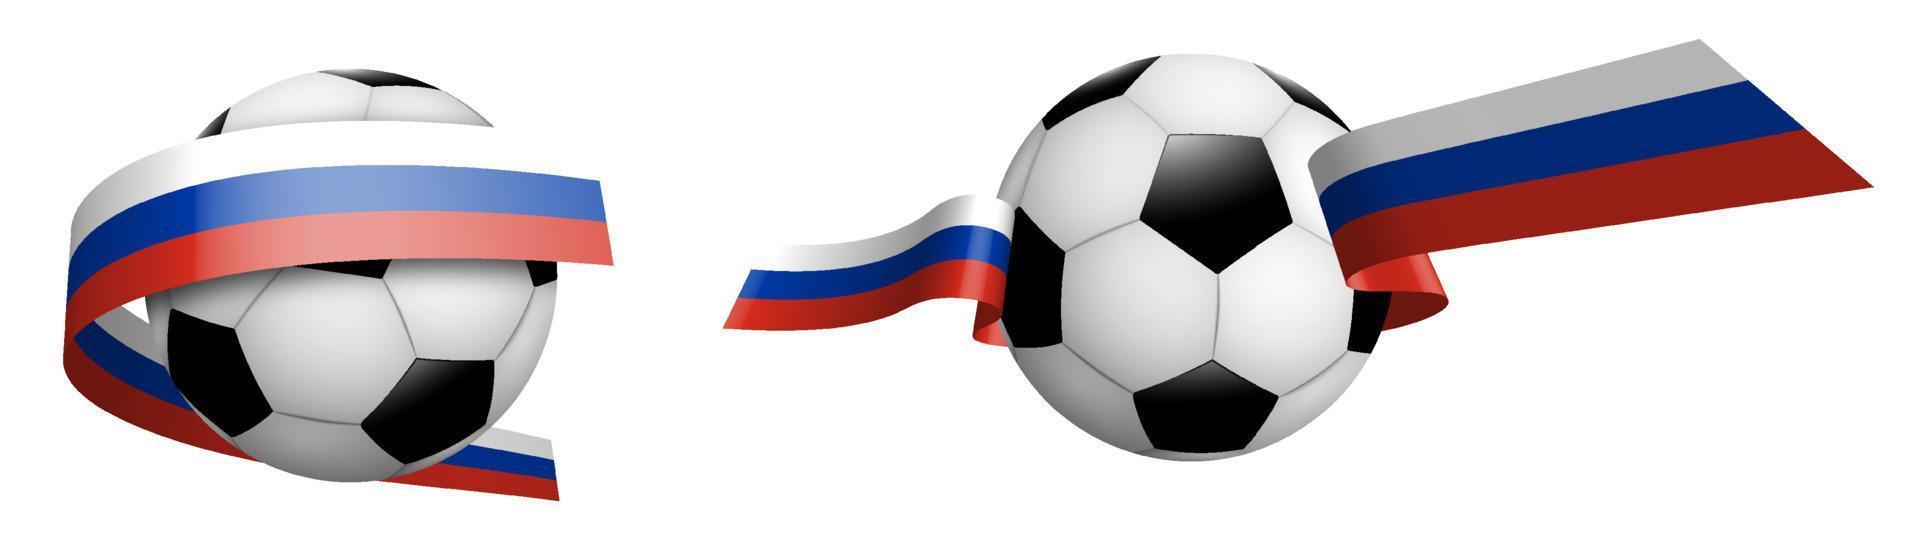 balles de football, football classique en rubans avec couleurs drapeau de la fédération de russie. élément de conception pour les compétitions de football. vecteur isolé sur fond blanc